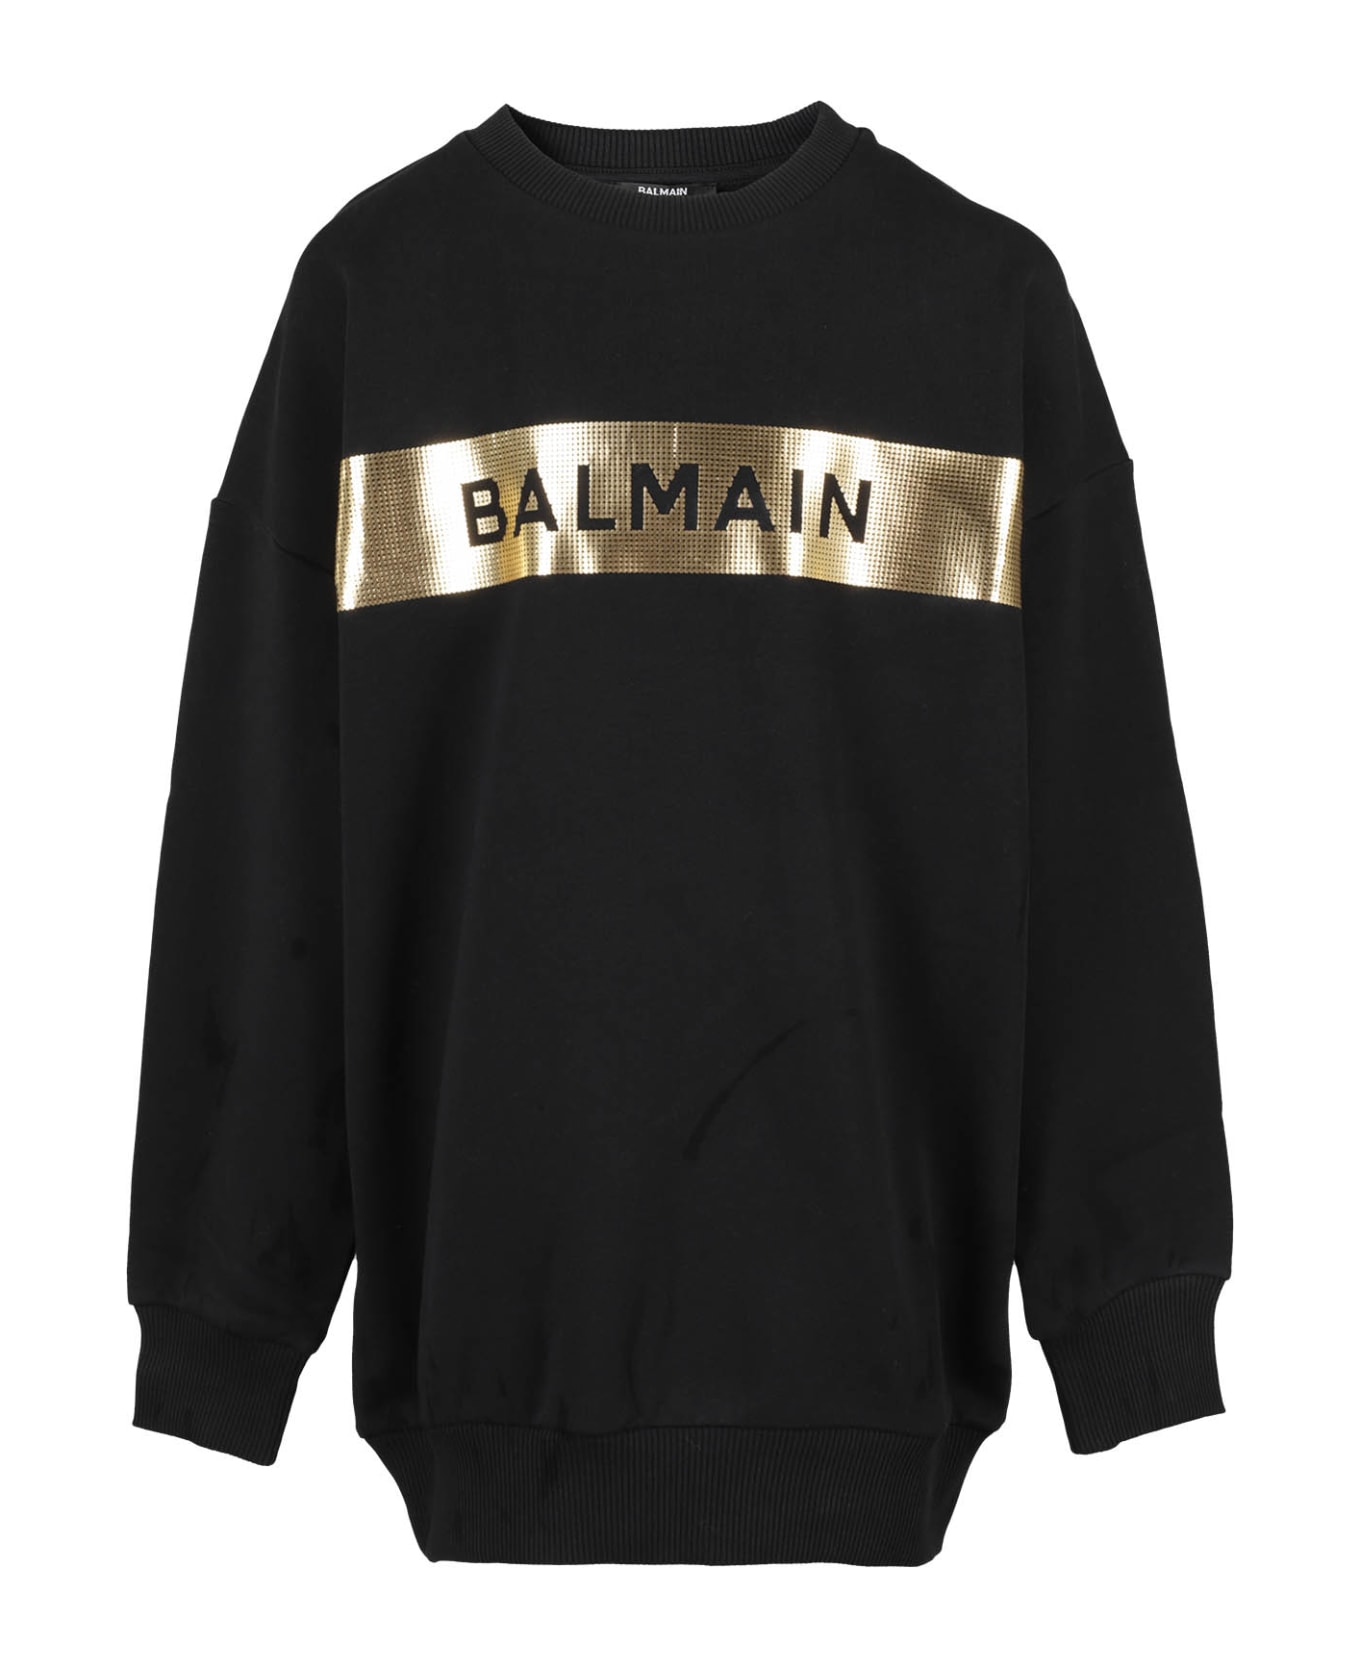 Balmain Girocollo - Or Black Gold